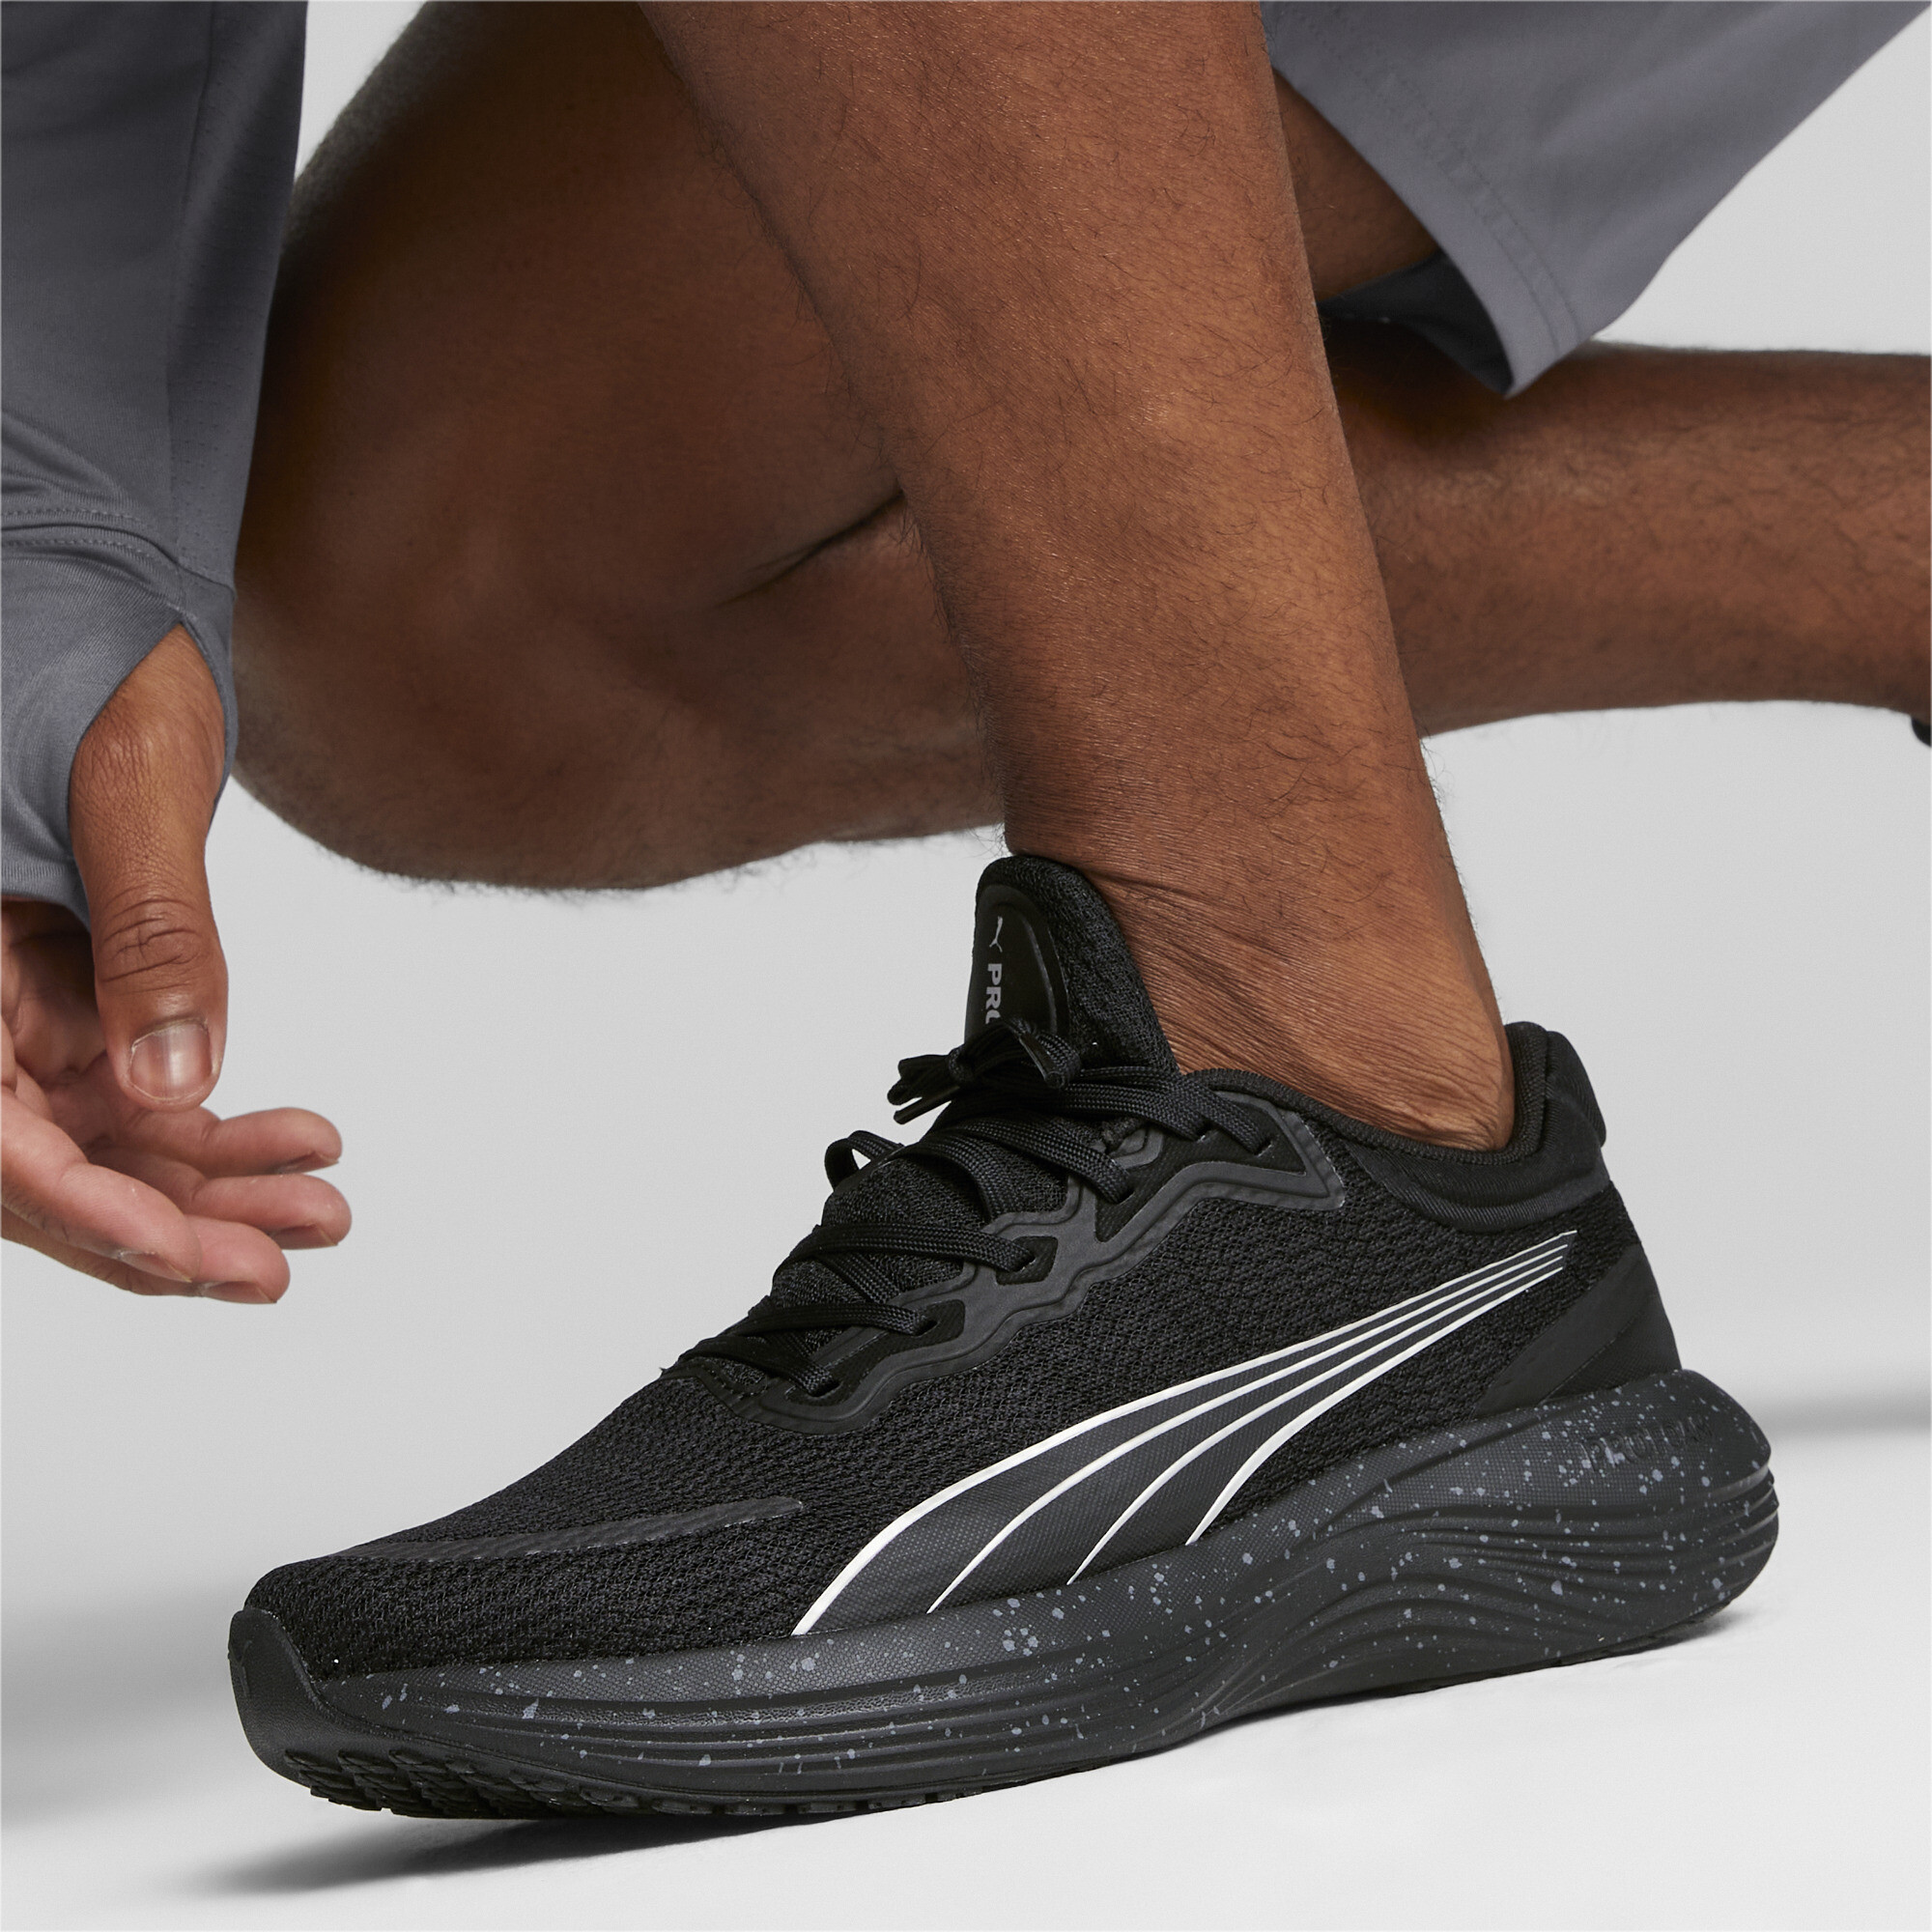 Men's PUMA Scend Pro Running Shoes In Black, Size EU 42